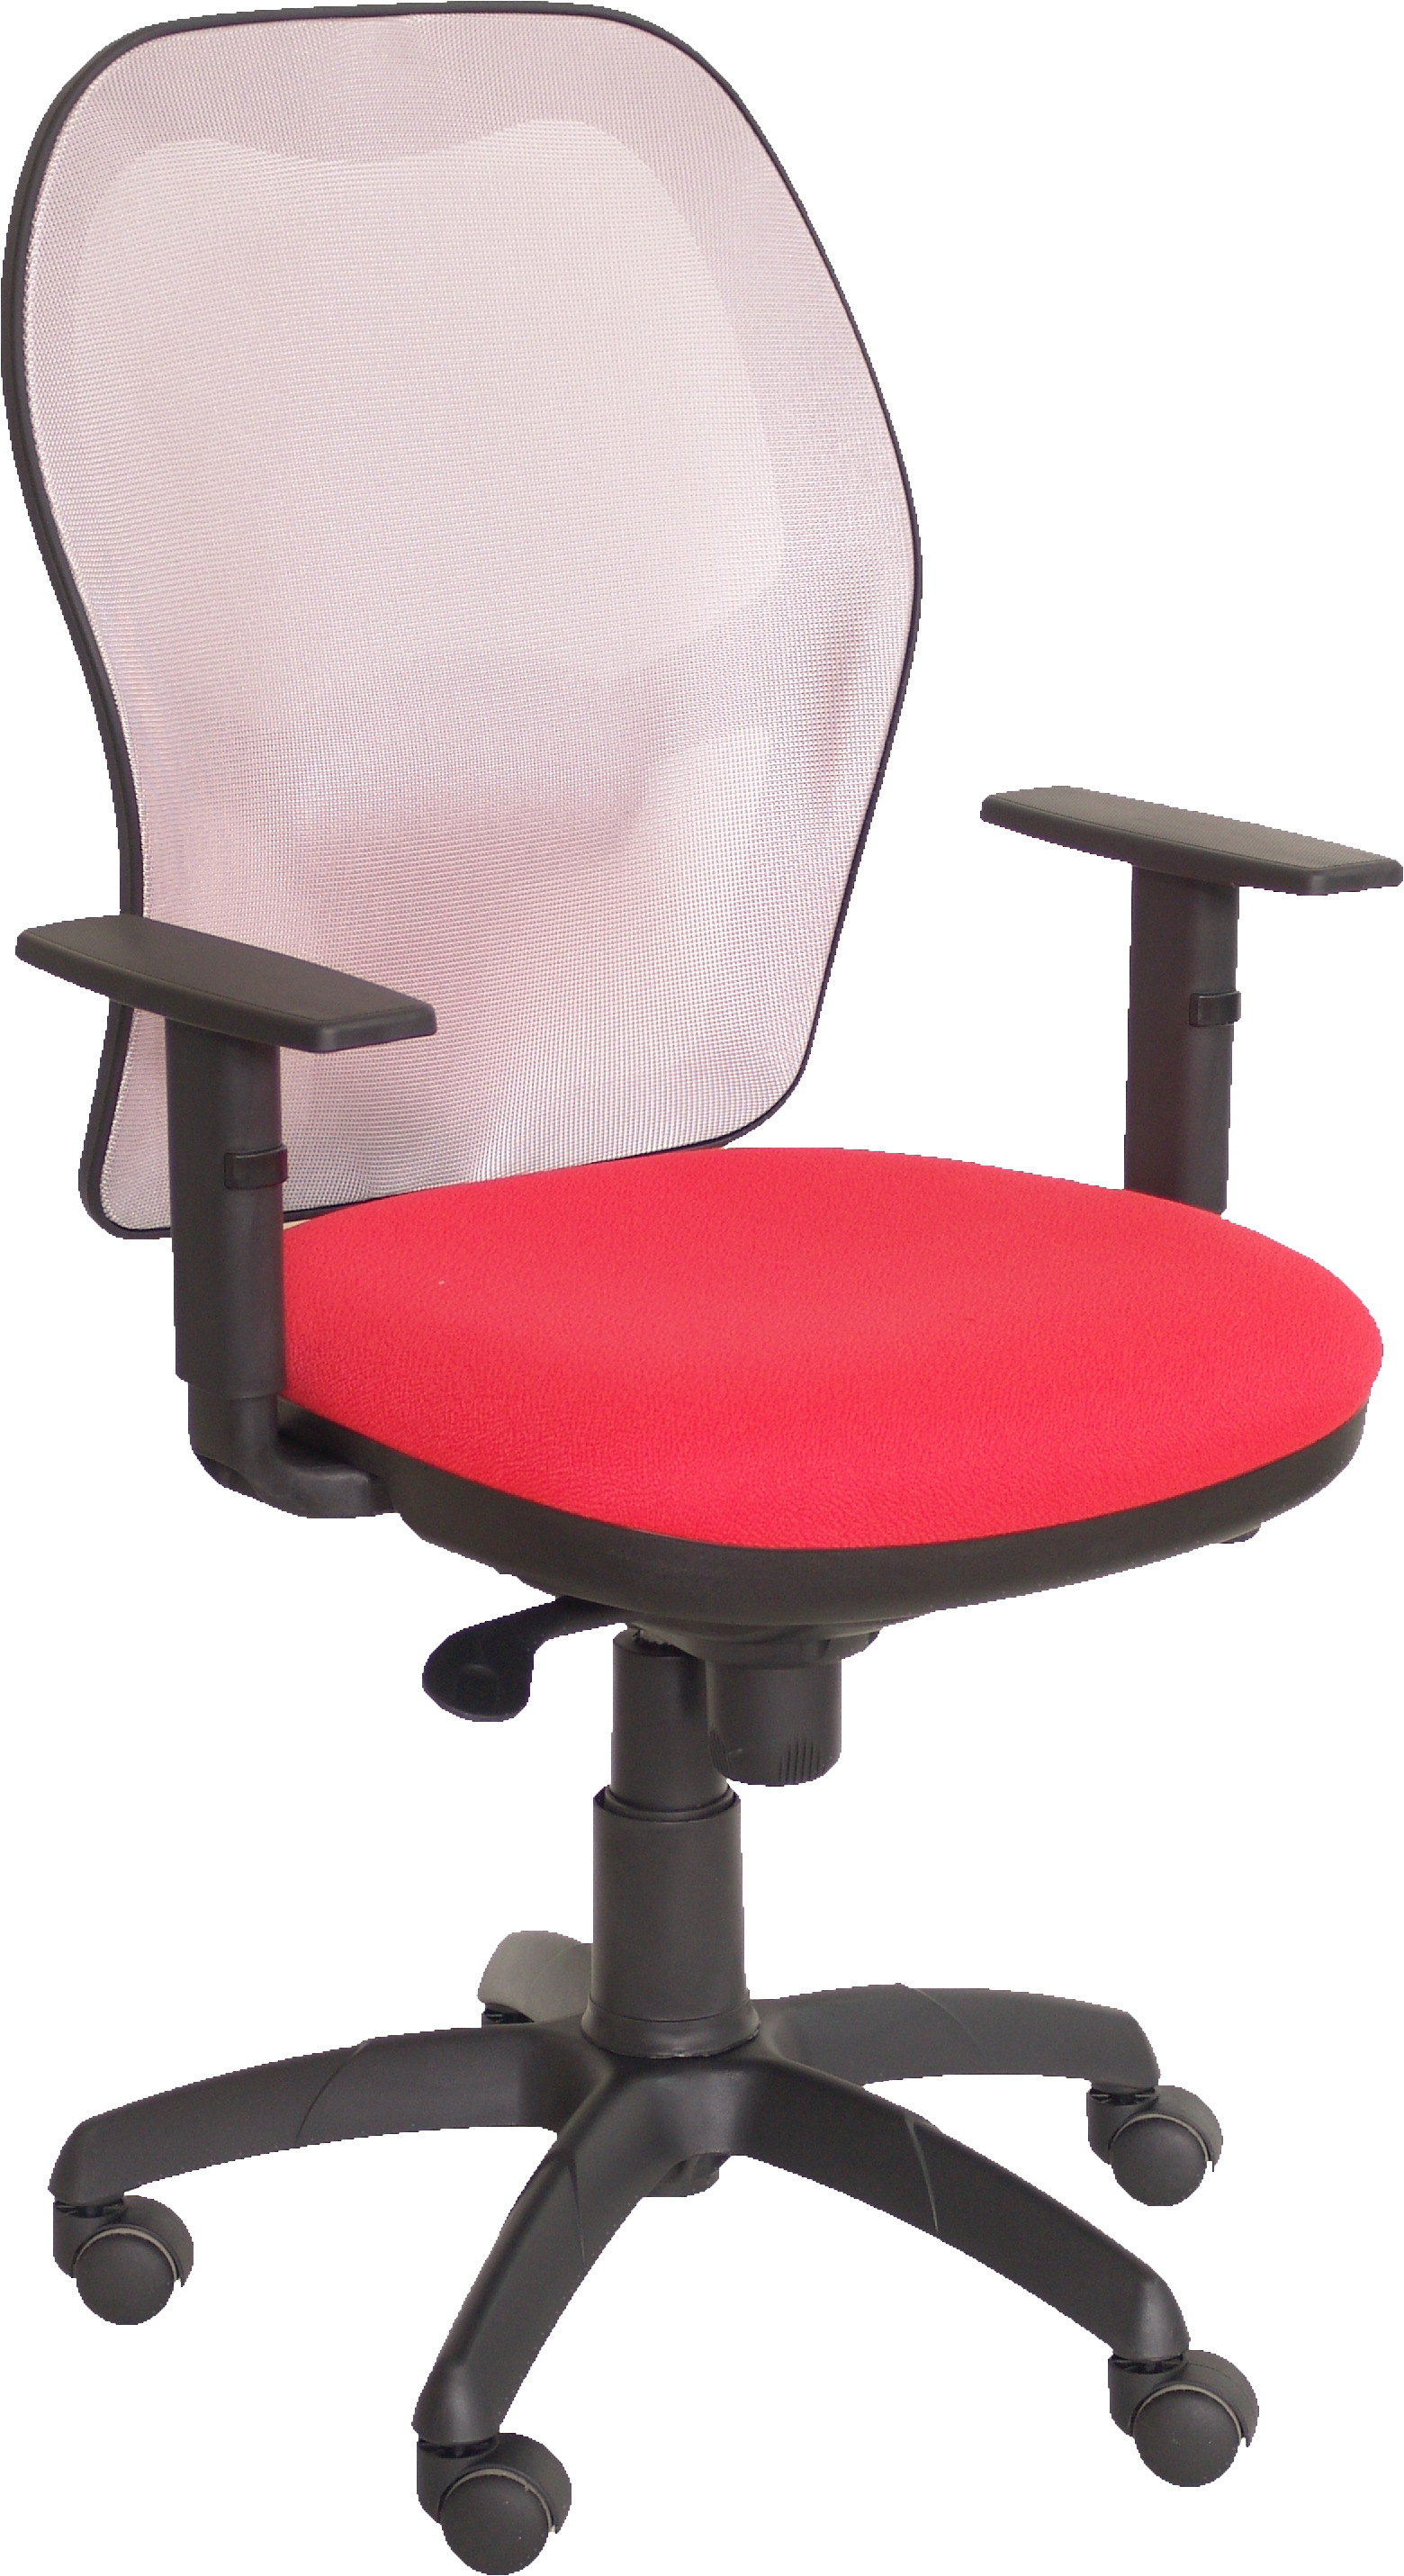 Silla De Escritorio operativa pyc jorquera rojo brazos ajustables malla oficina piqueras y crespo modelo tejido bali 3 gris